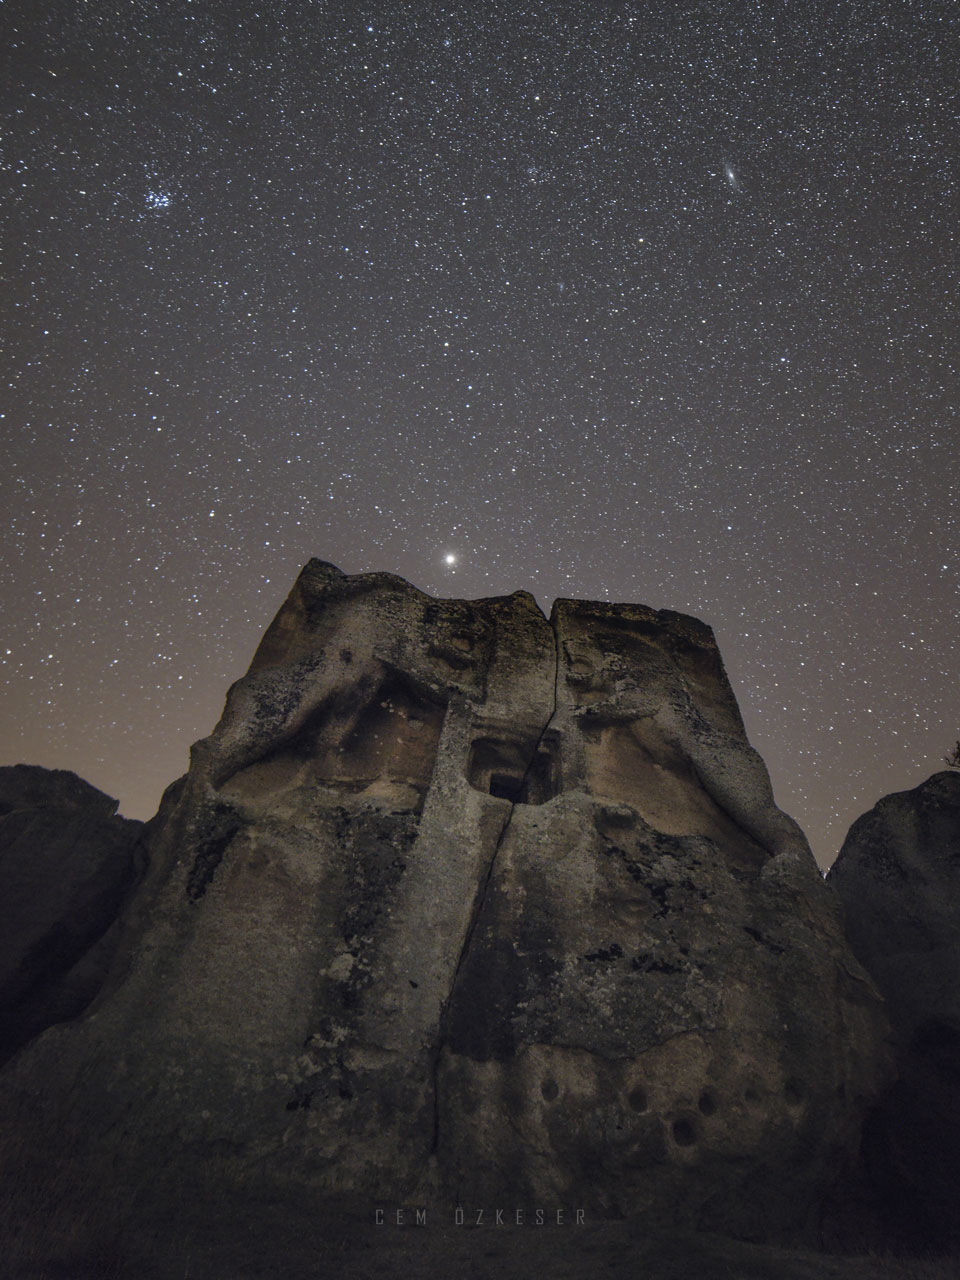 Die Plejaden, die Andromedagalaxie und der Planet Mars in Opposition über einer Gruft im Phrygischen Tal in der Türkei.